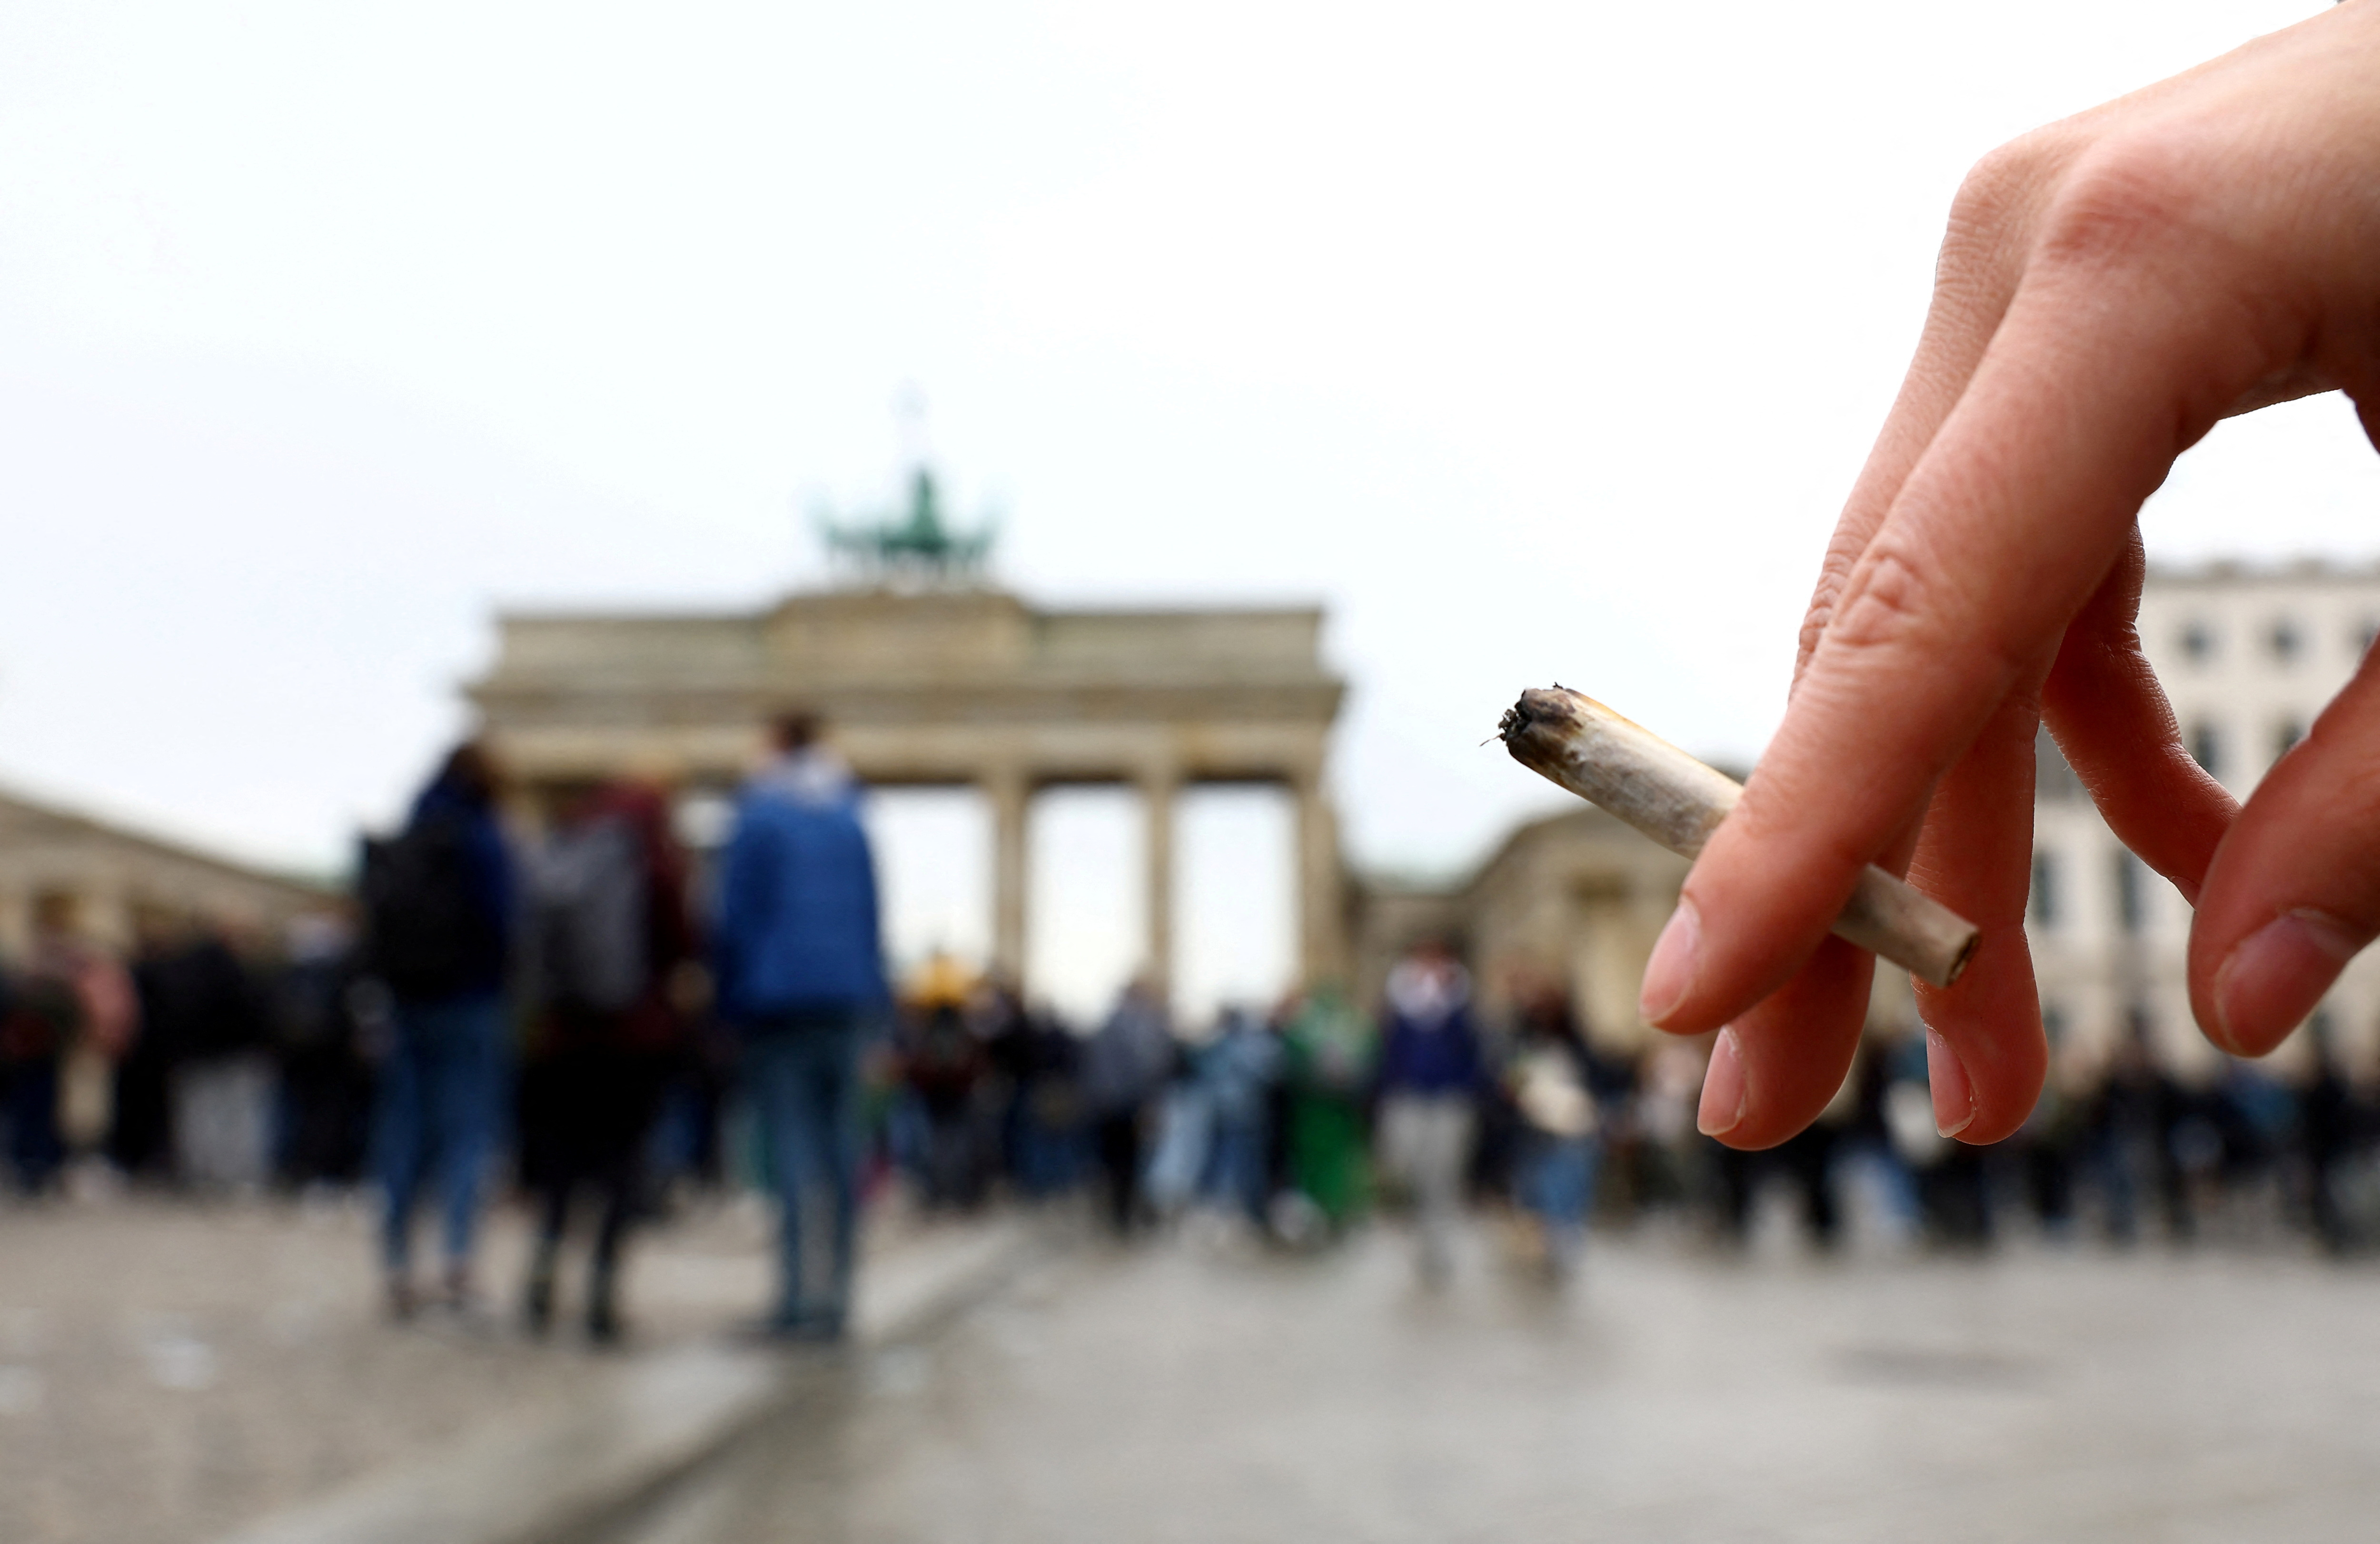 Una persona sostiene un porro mientras los activistas se reúnen para conmemorar el día mundial anual del cannabis y para protestar por la legalización de la marihuana, frente a la Puerta de Brandenburgo, en Berlín, Alemania, el 20 de abril de 2022 (REUTERS/Lisi Niesner)